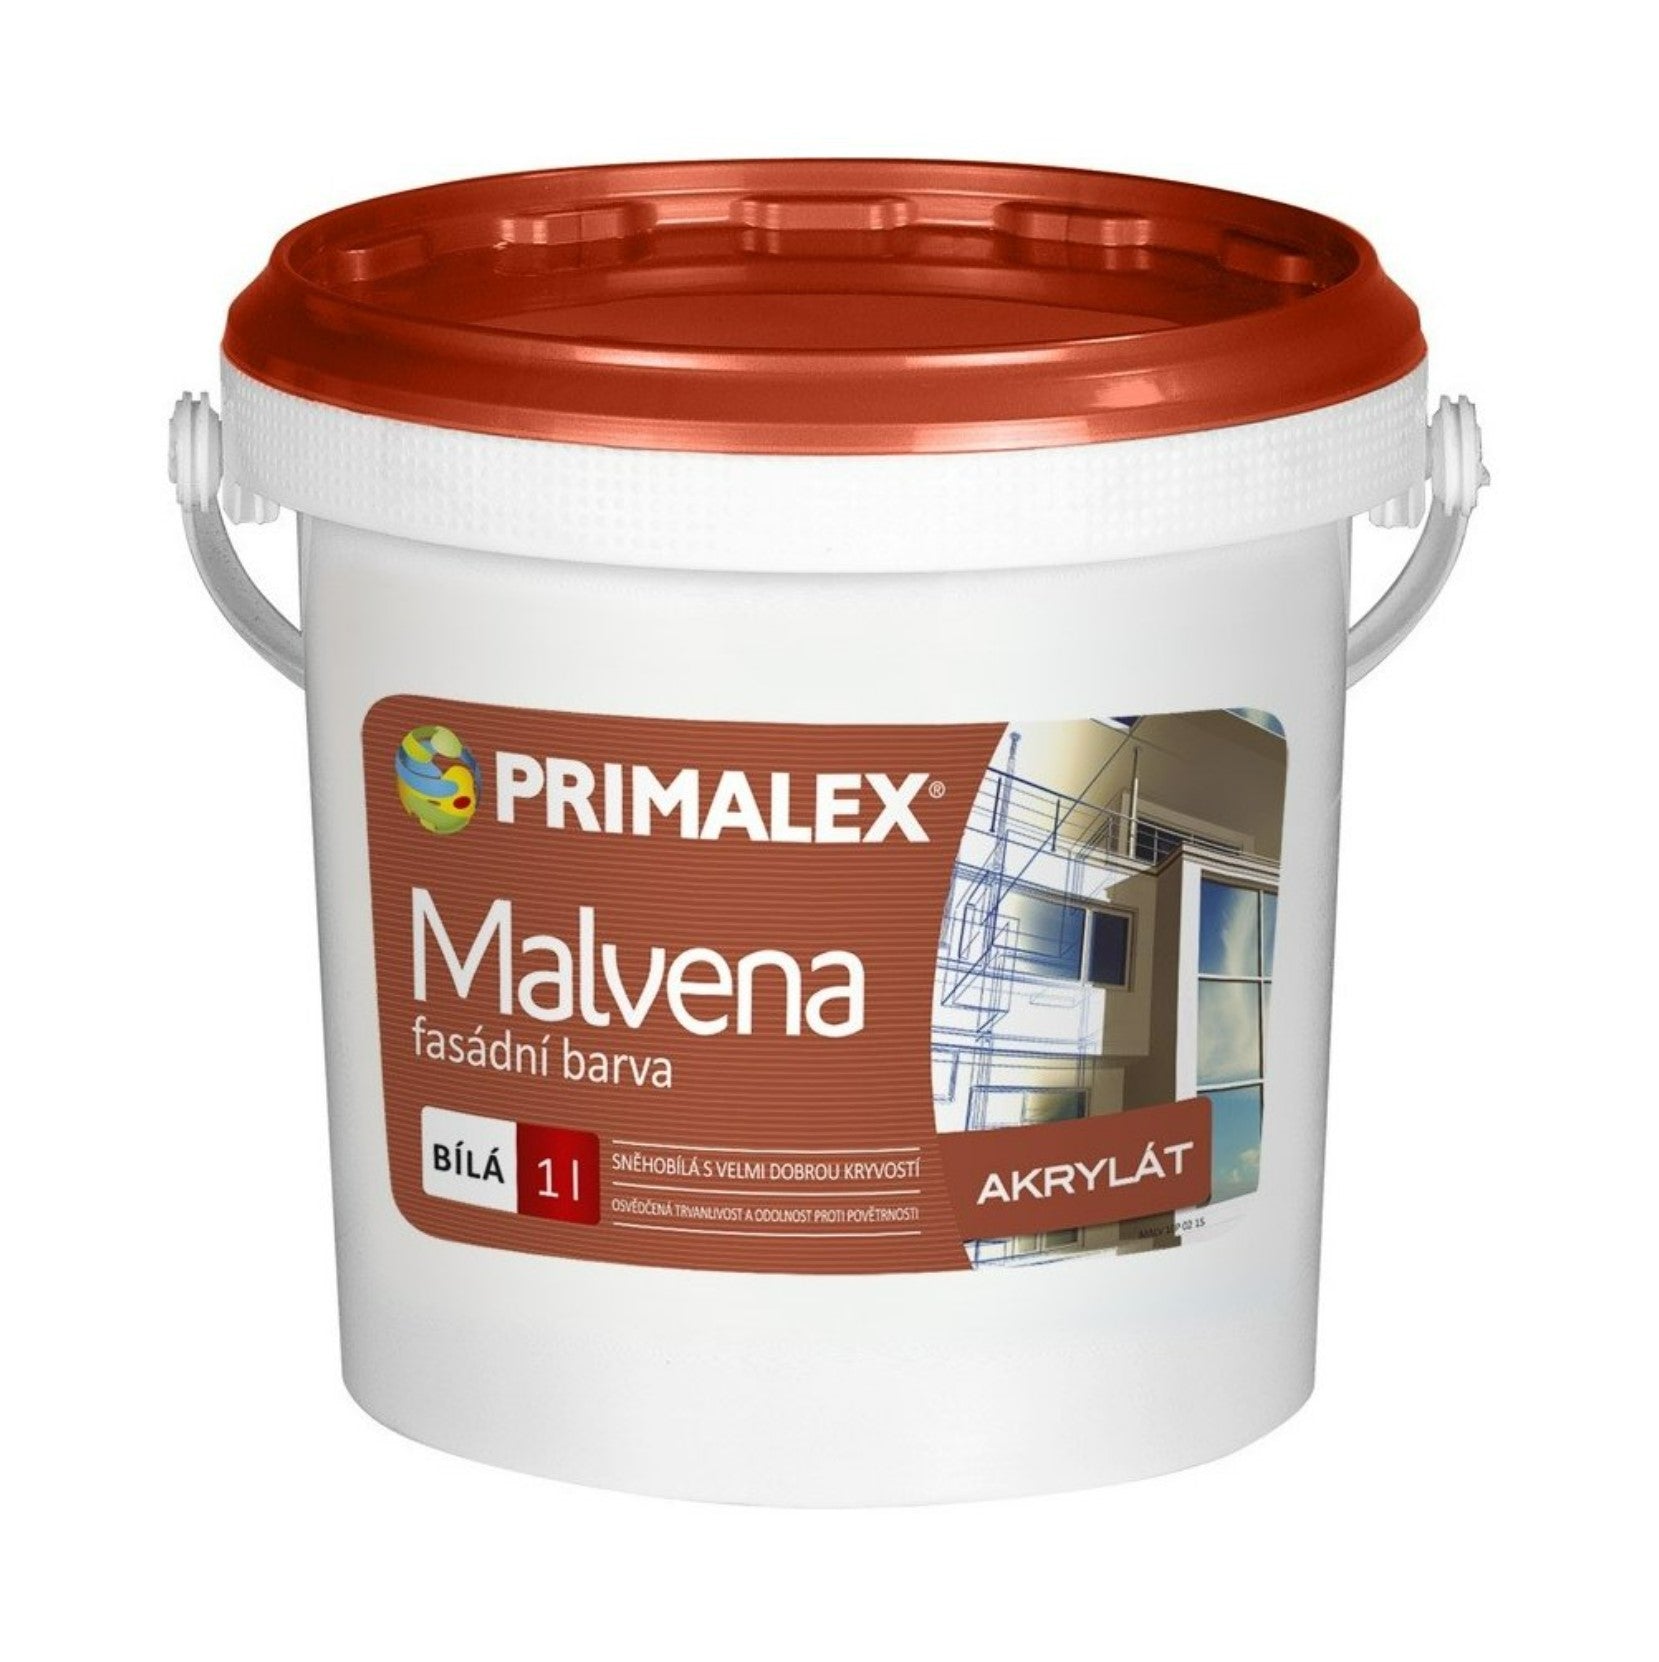 PRIMALEX Malvena fasádní barva 1 l